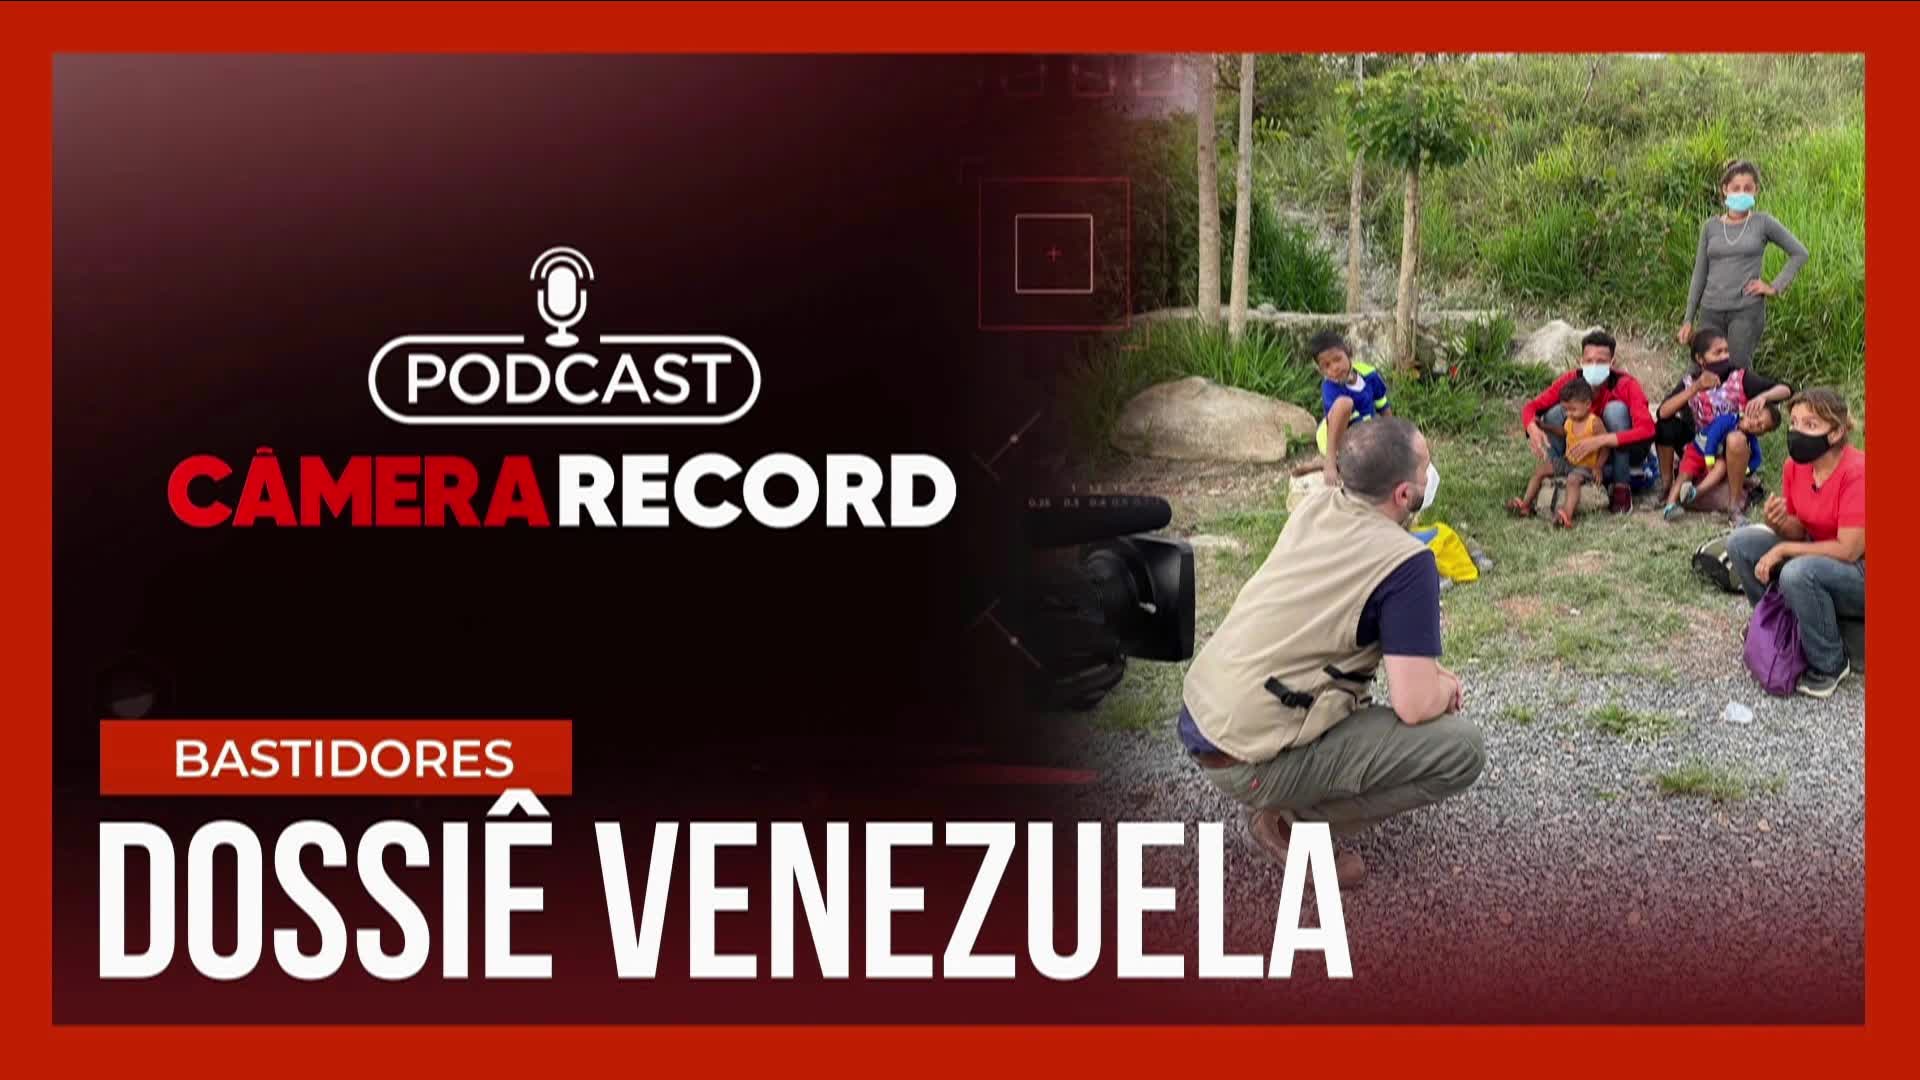 Vídeo: Podcast Câmera Record | Dossiê Venezuela